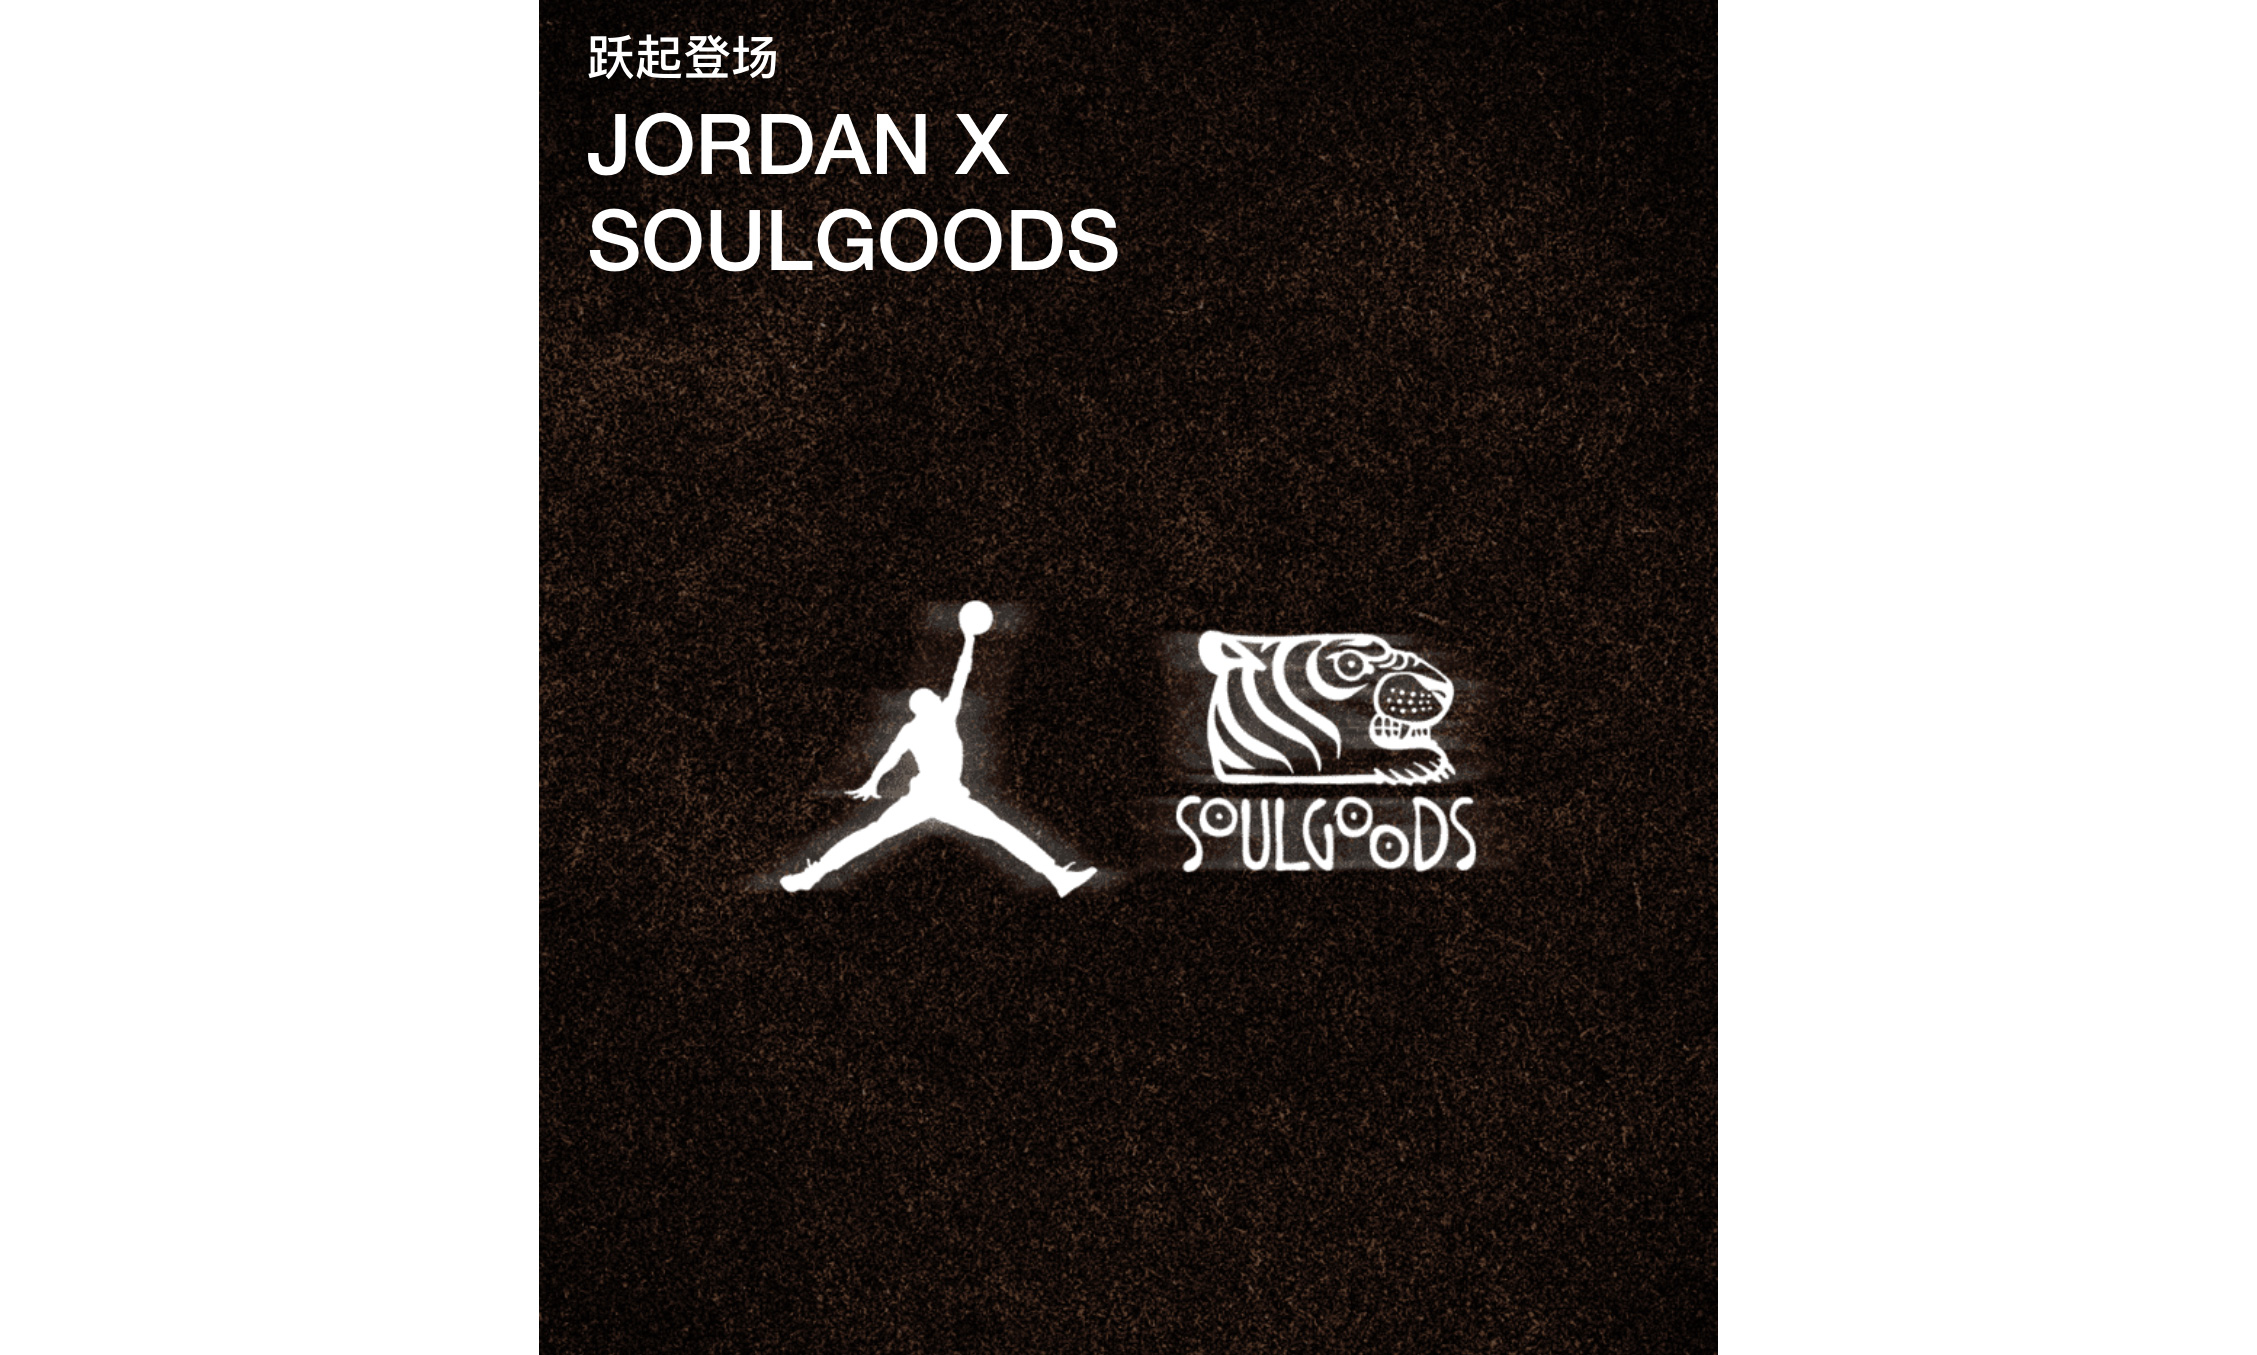 官方发布 Jordan x SOULGOODS 全新合作预告